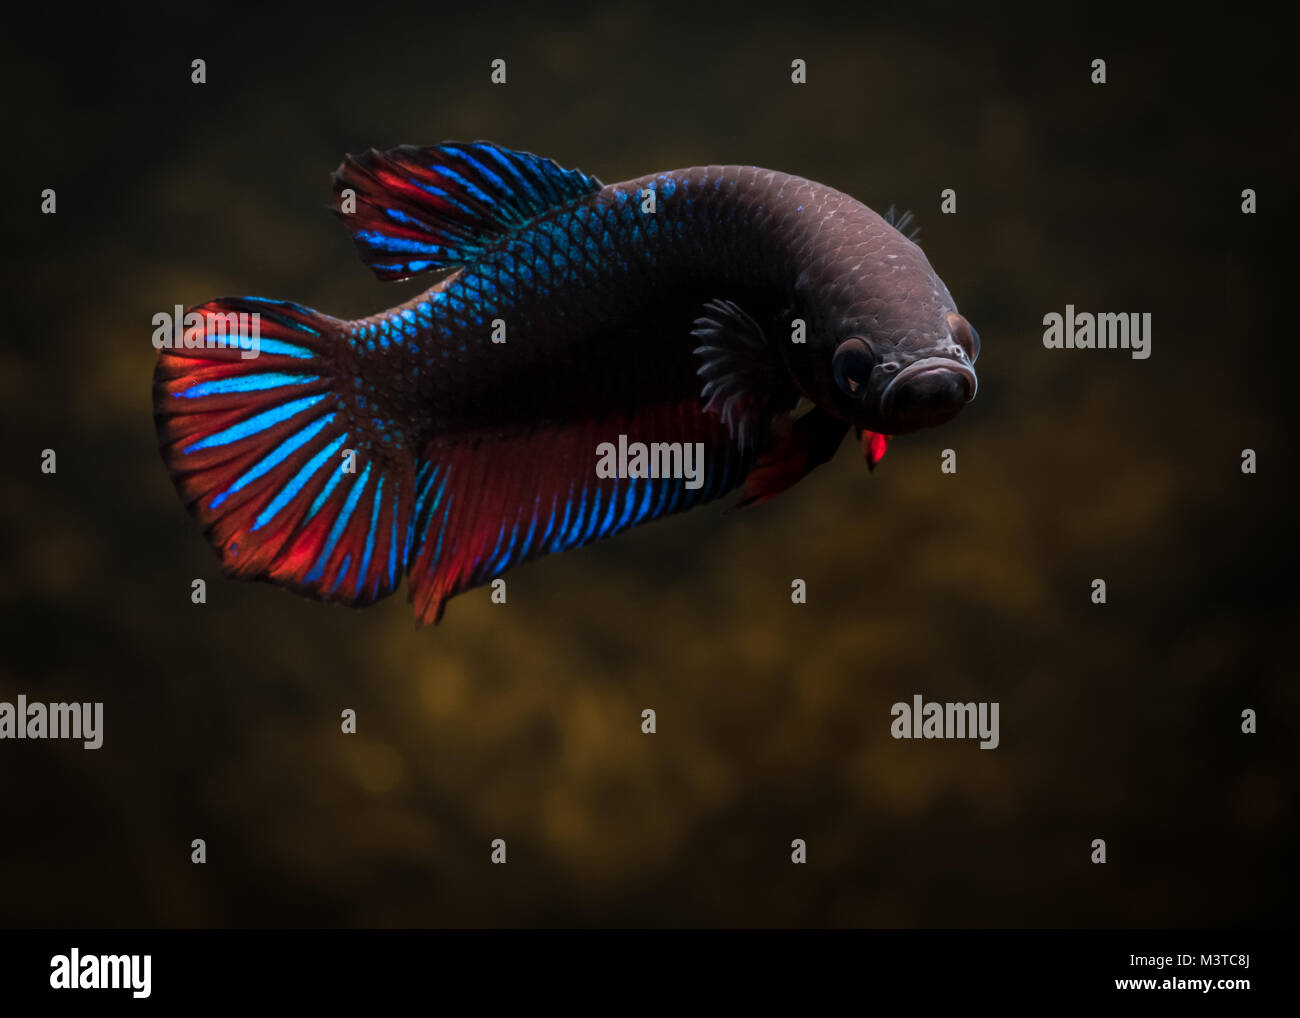 Common male betta fish Stock Photo